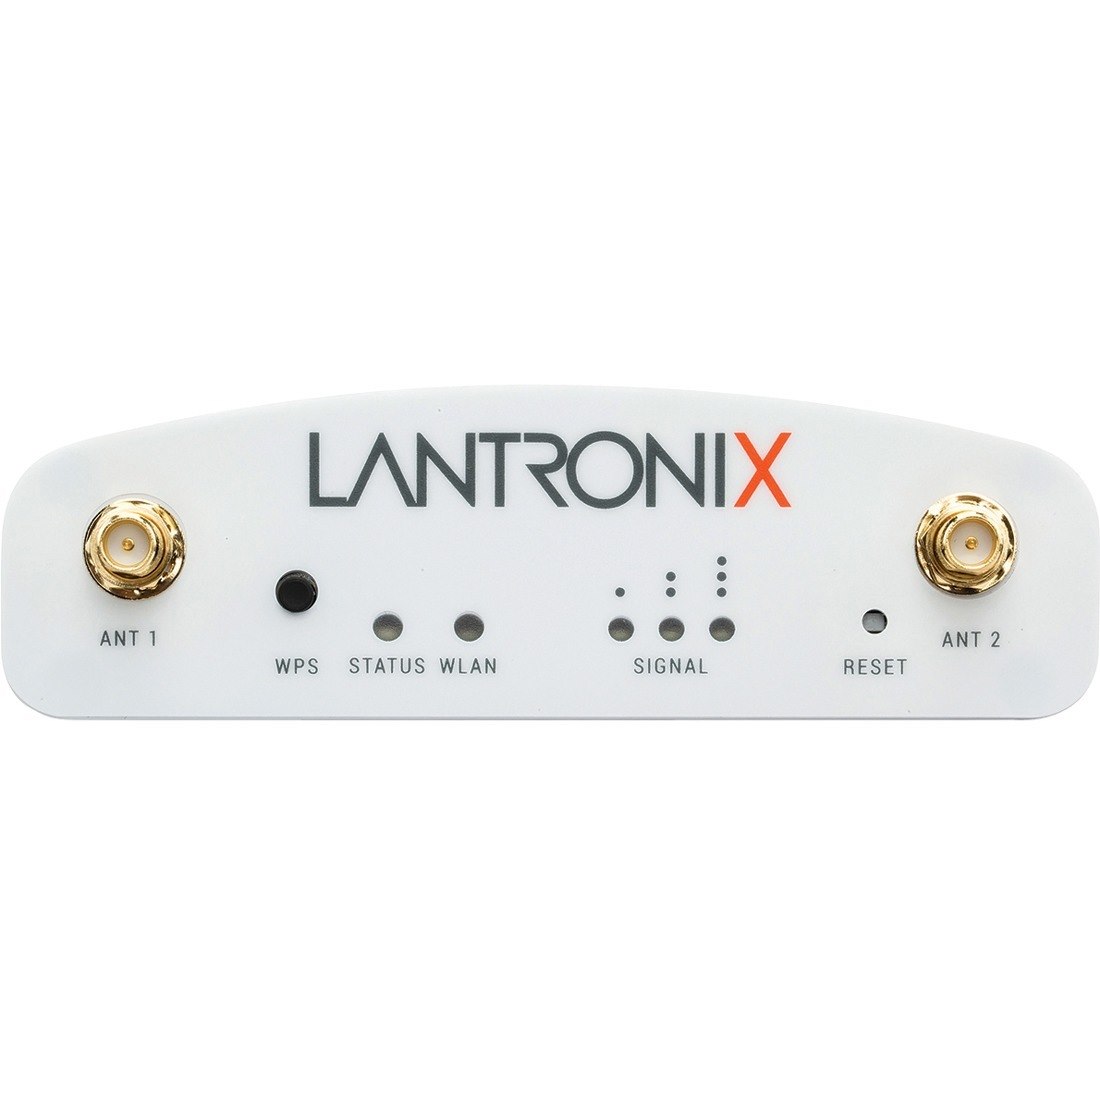 Lantronix SGX 5150 Wireless IoT Gateway, 802.11a/b/g/n/ac, 1xRS232 (RJ45), USB, 10/100 Ethernet, PoE, Japan Model